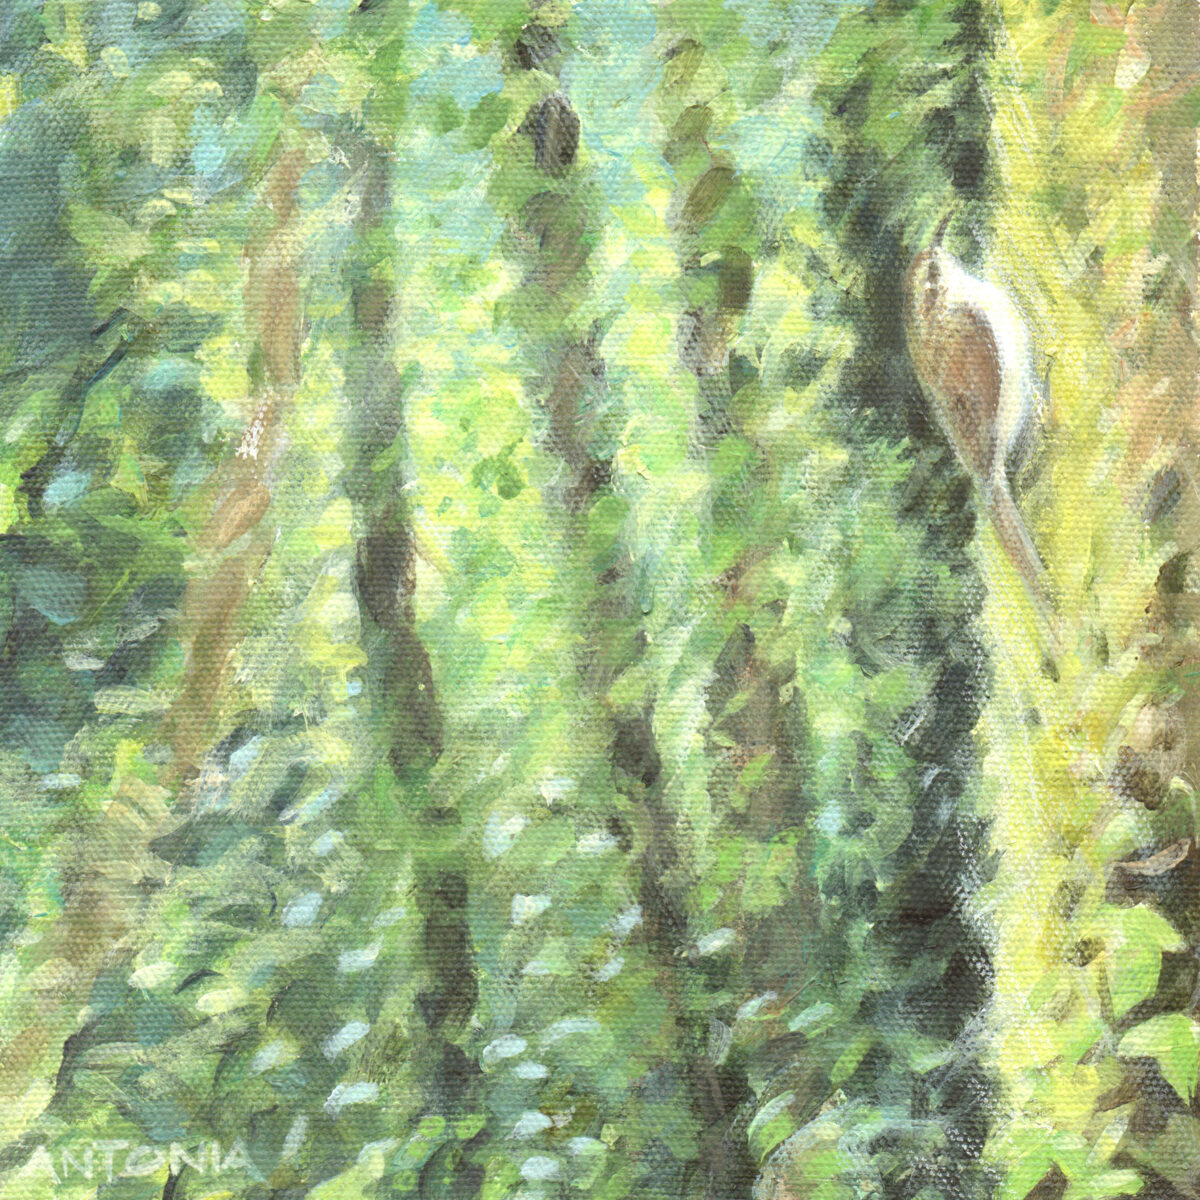 Artwork image titled: Woodland Afternoon – Uplyme